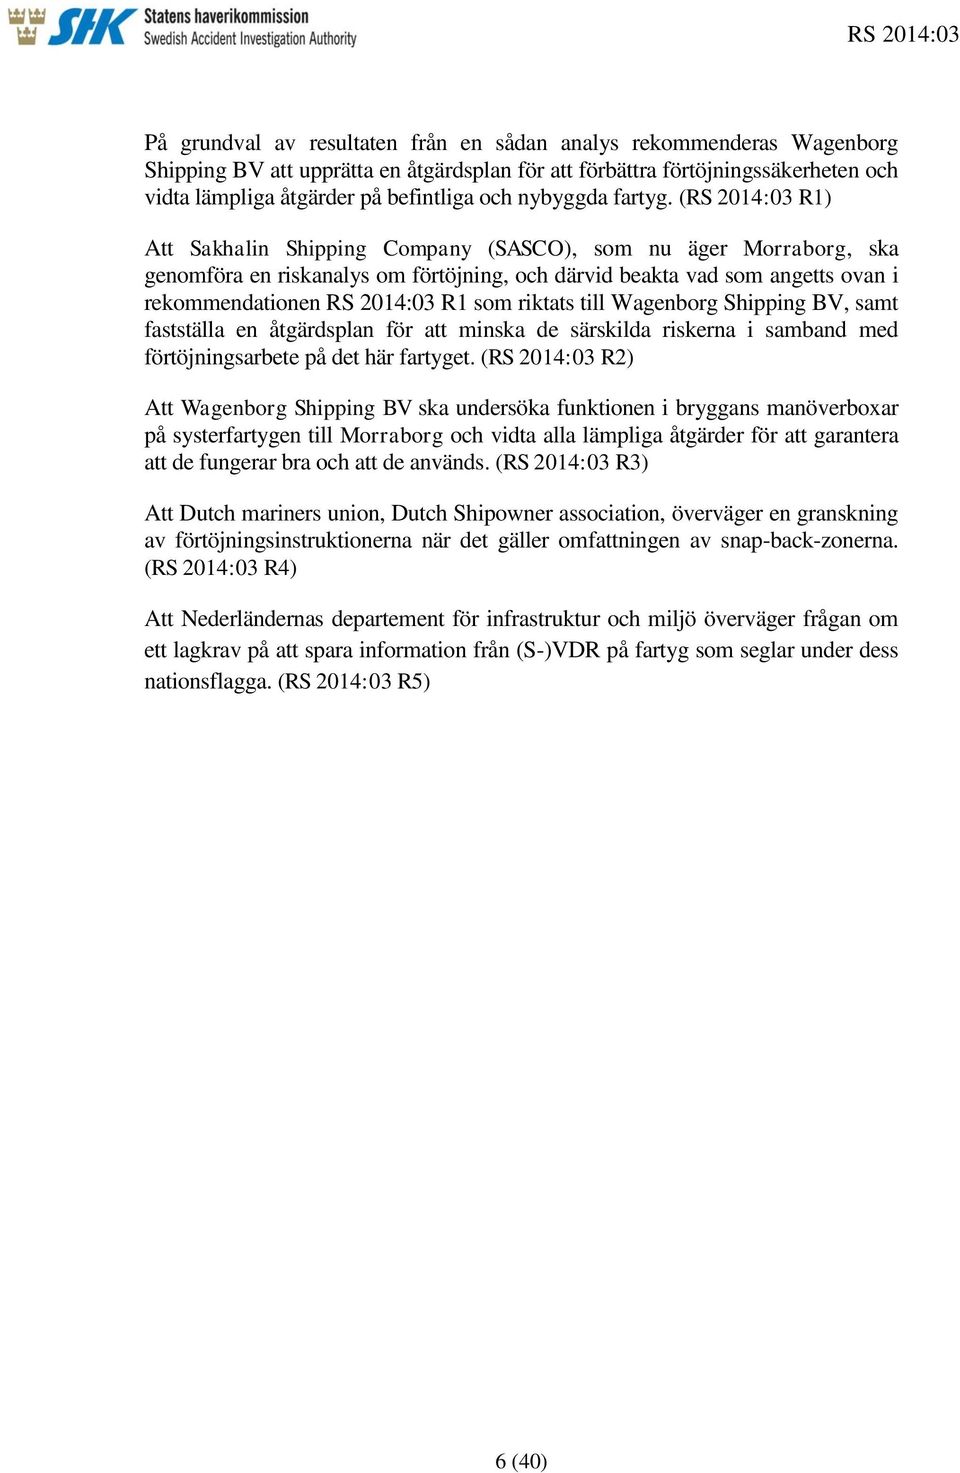 (RS 2014:03 R1) Att Sakhalin Shipping Company (SASCO), som nu äger Morraborg, ska genomföra en riskanalys om förtöjning, och därvid beakta vad som angetts ovan i rekommendationen RS 2014:03 R1 som